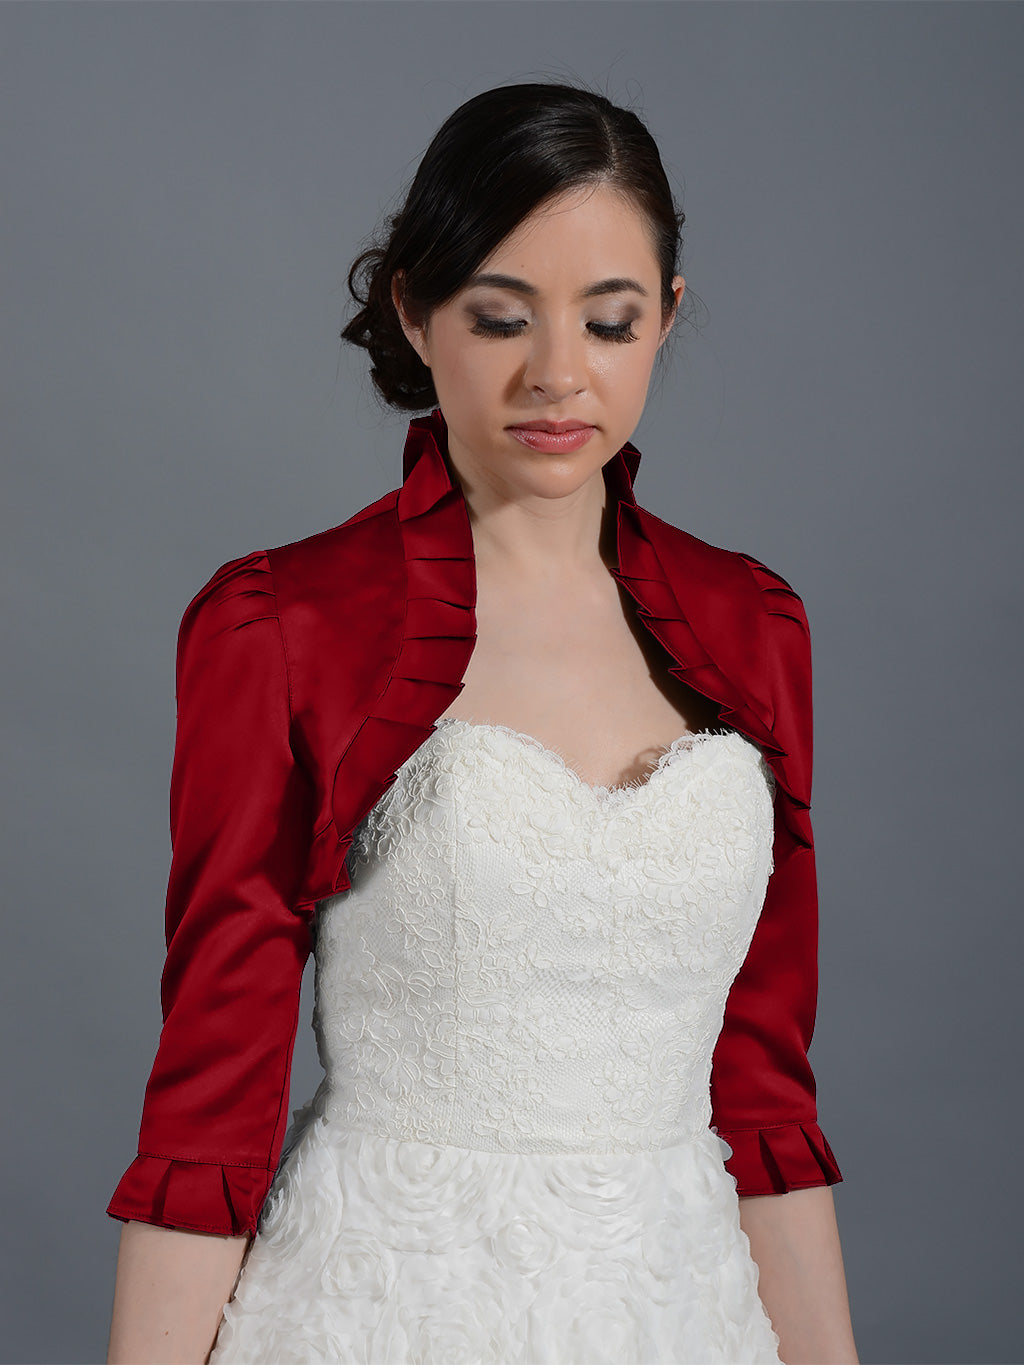 Wedding Bolero Jackets, Wedding Jacket, Bridal Jacket, Wedding Dress ...